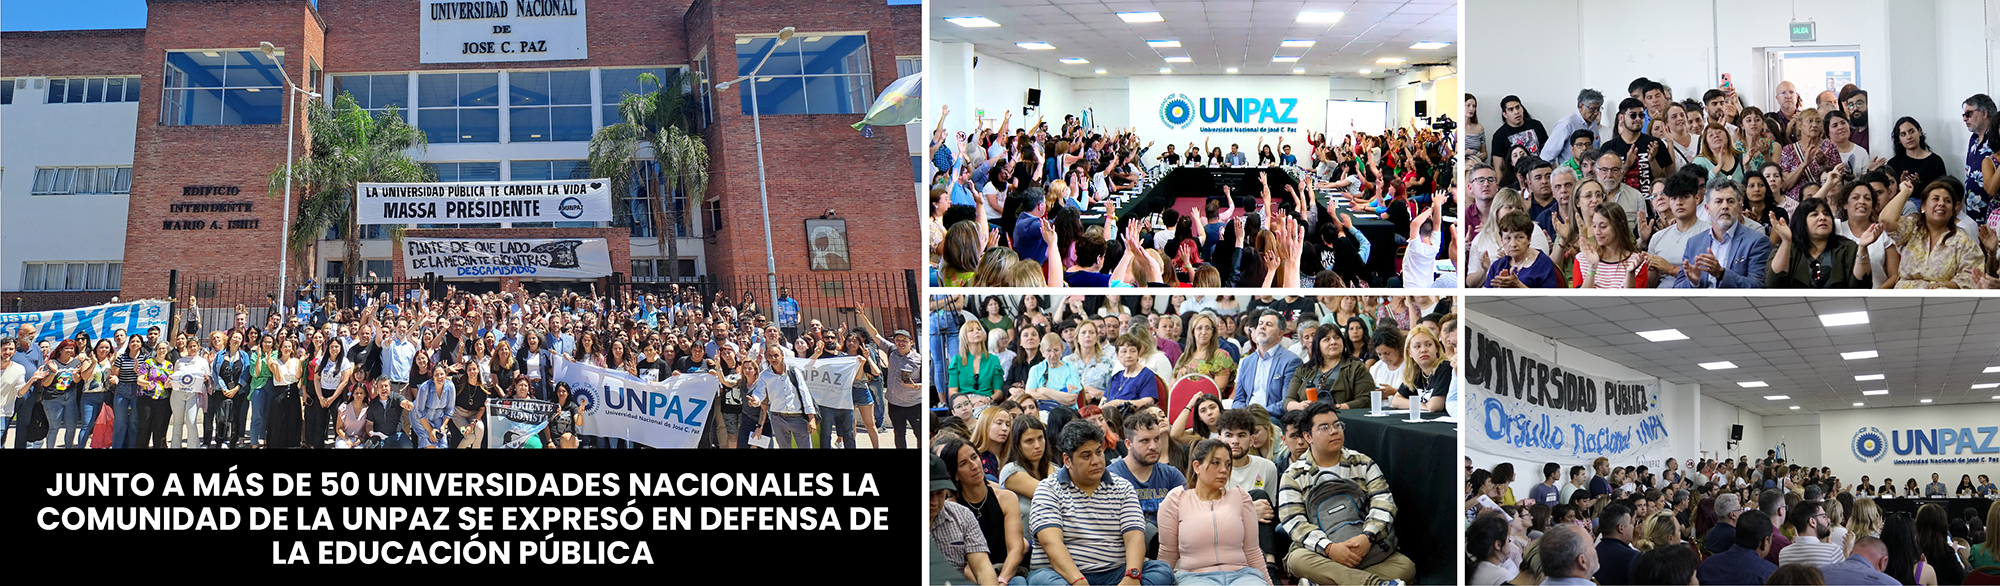 Junto a más de 50 universidades nacionales la comunidad de la UNPAZ se expresó en defensa de la educación pública